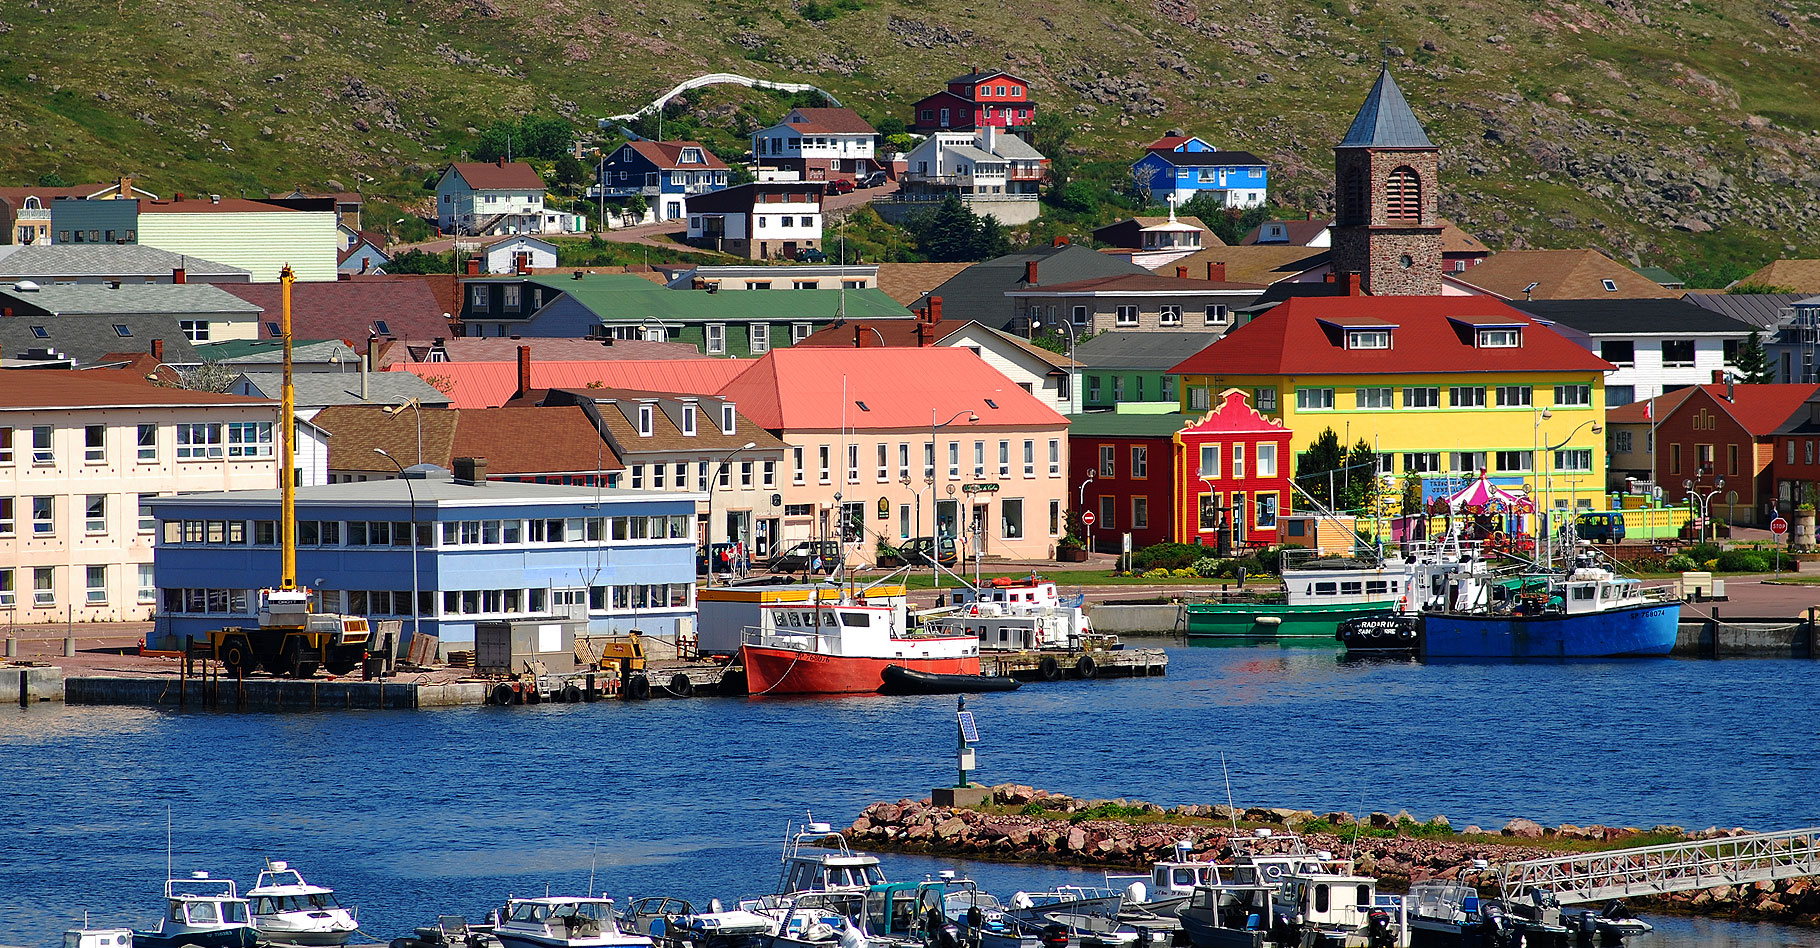 Le petit port de St Pierre et Miquelon. © Gord McKenna - CC BY-NC 2.0